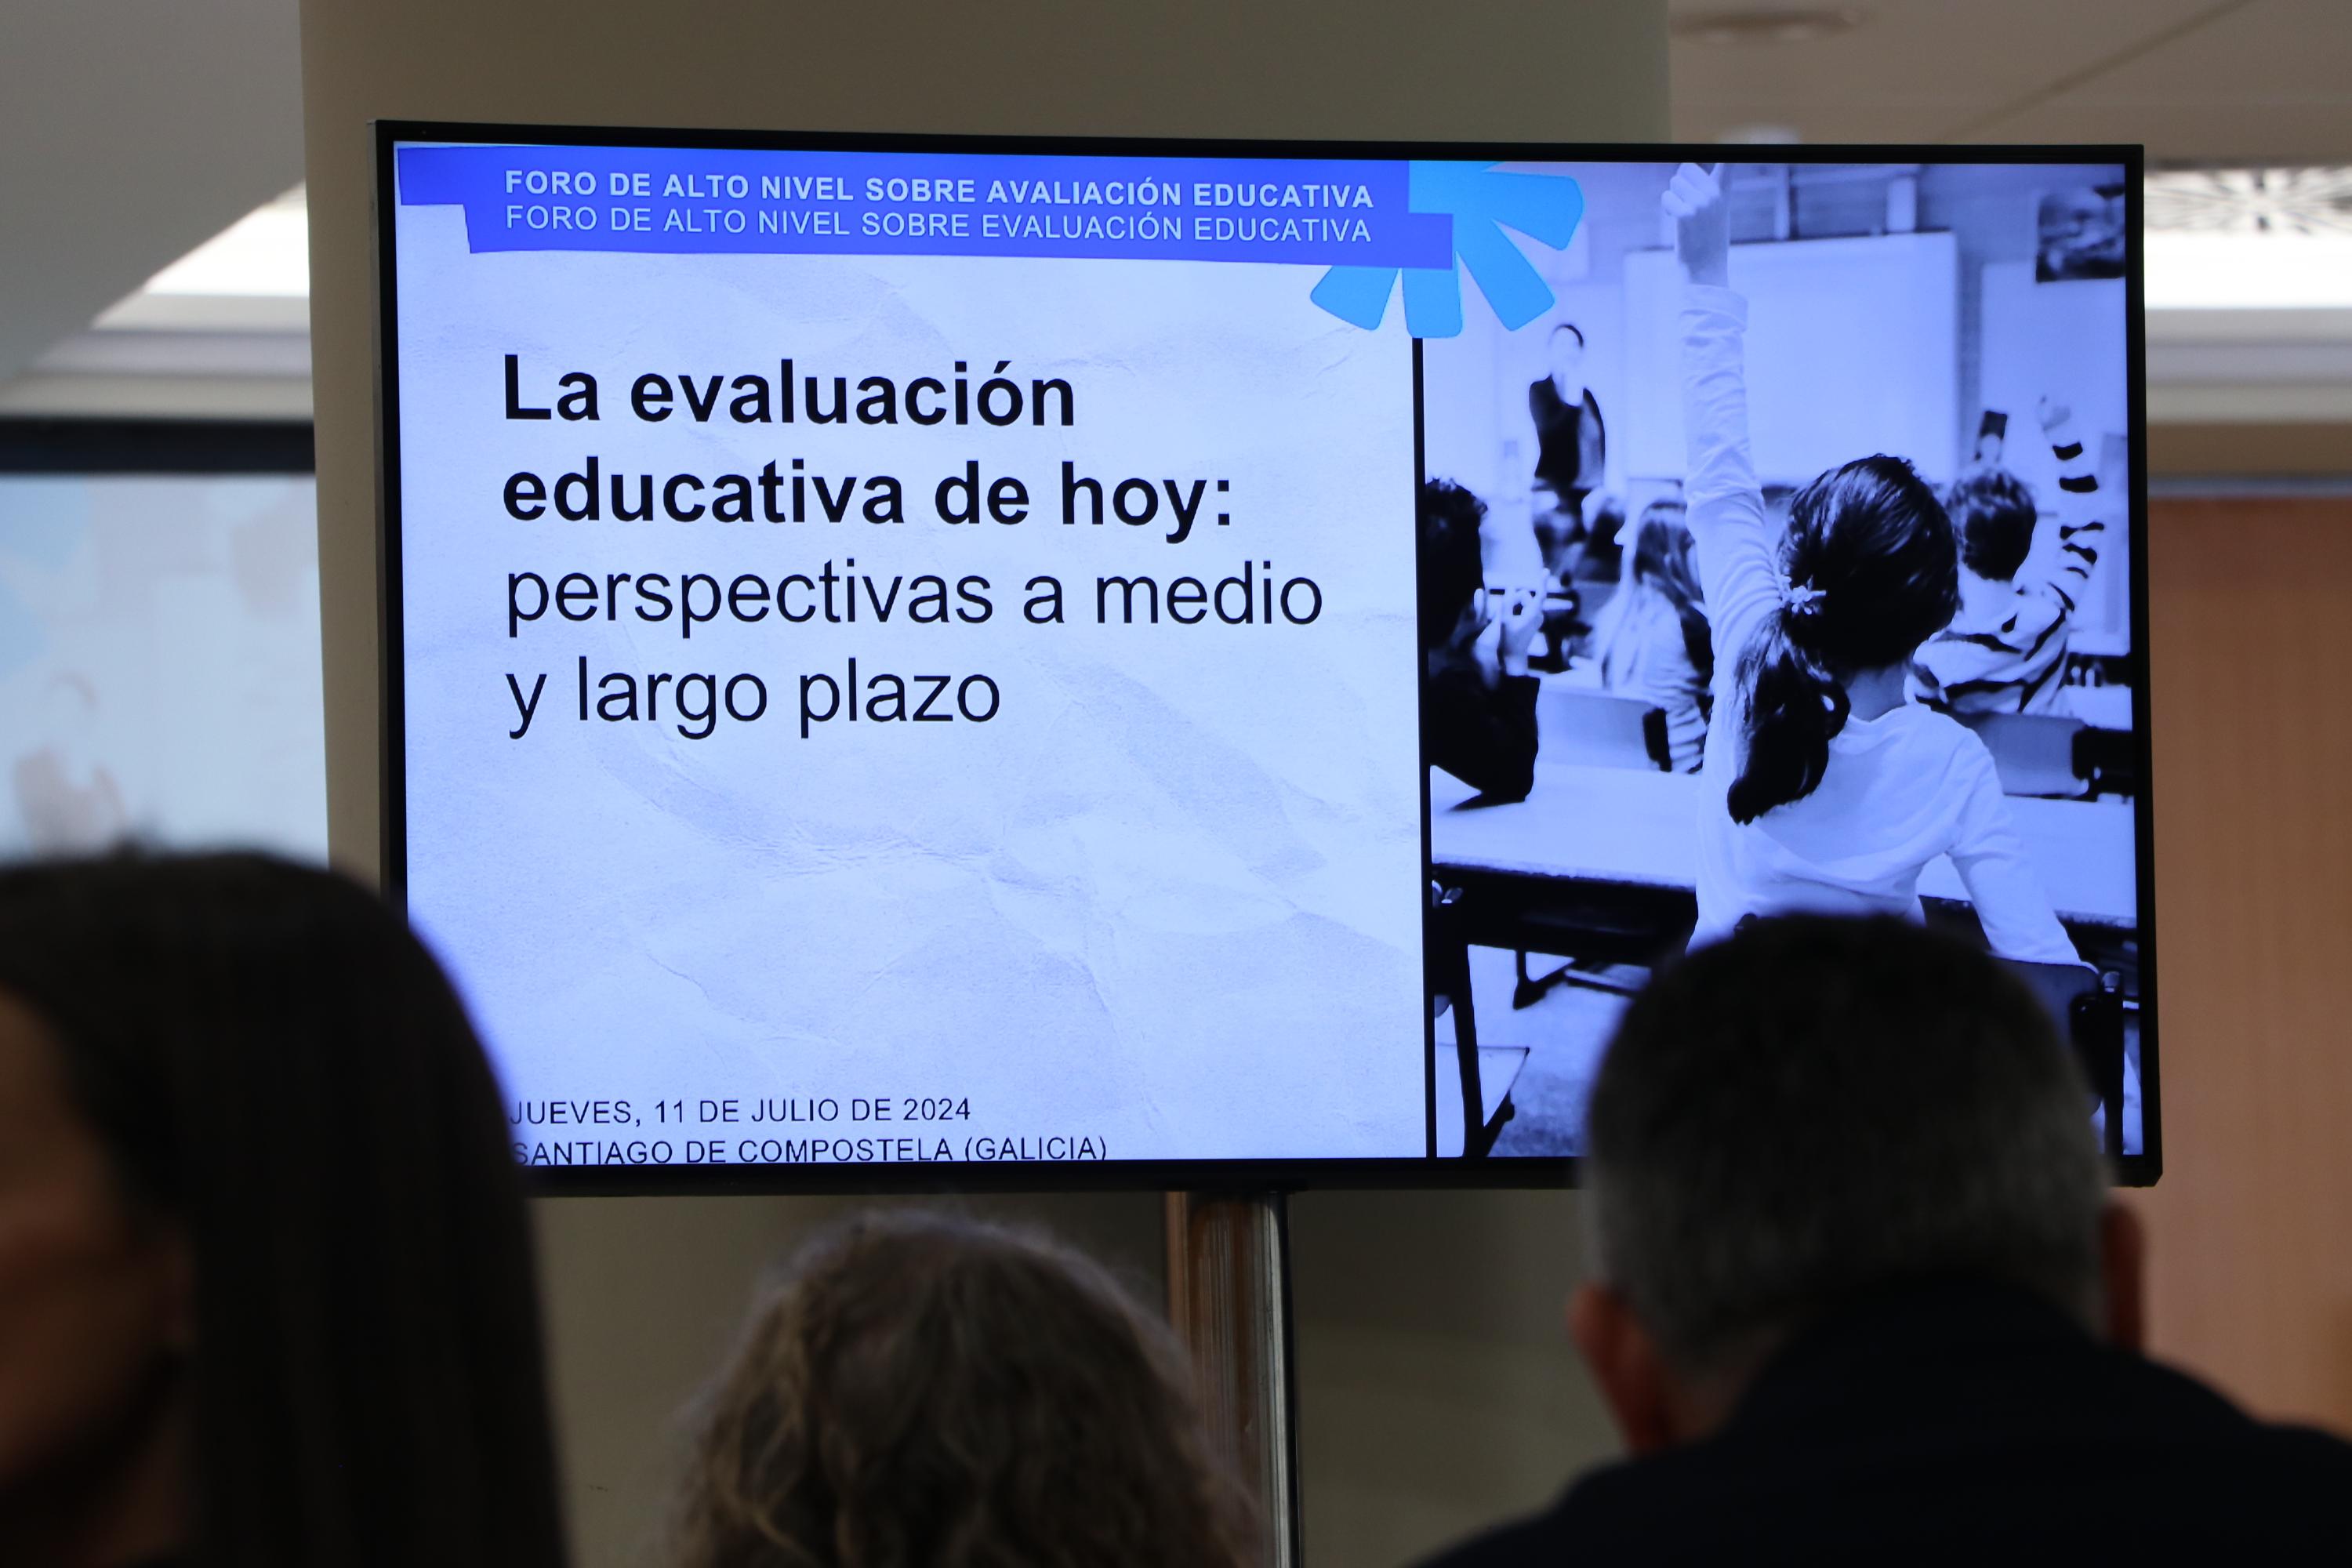 Un foro organizado por la OEI y la Xunta de Galicia debate sobre evaluación educativa y sus perspectivas de futuro